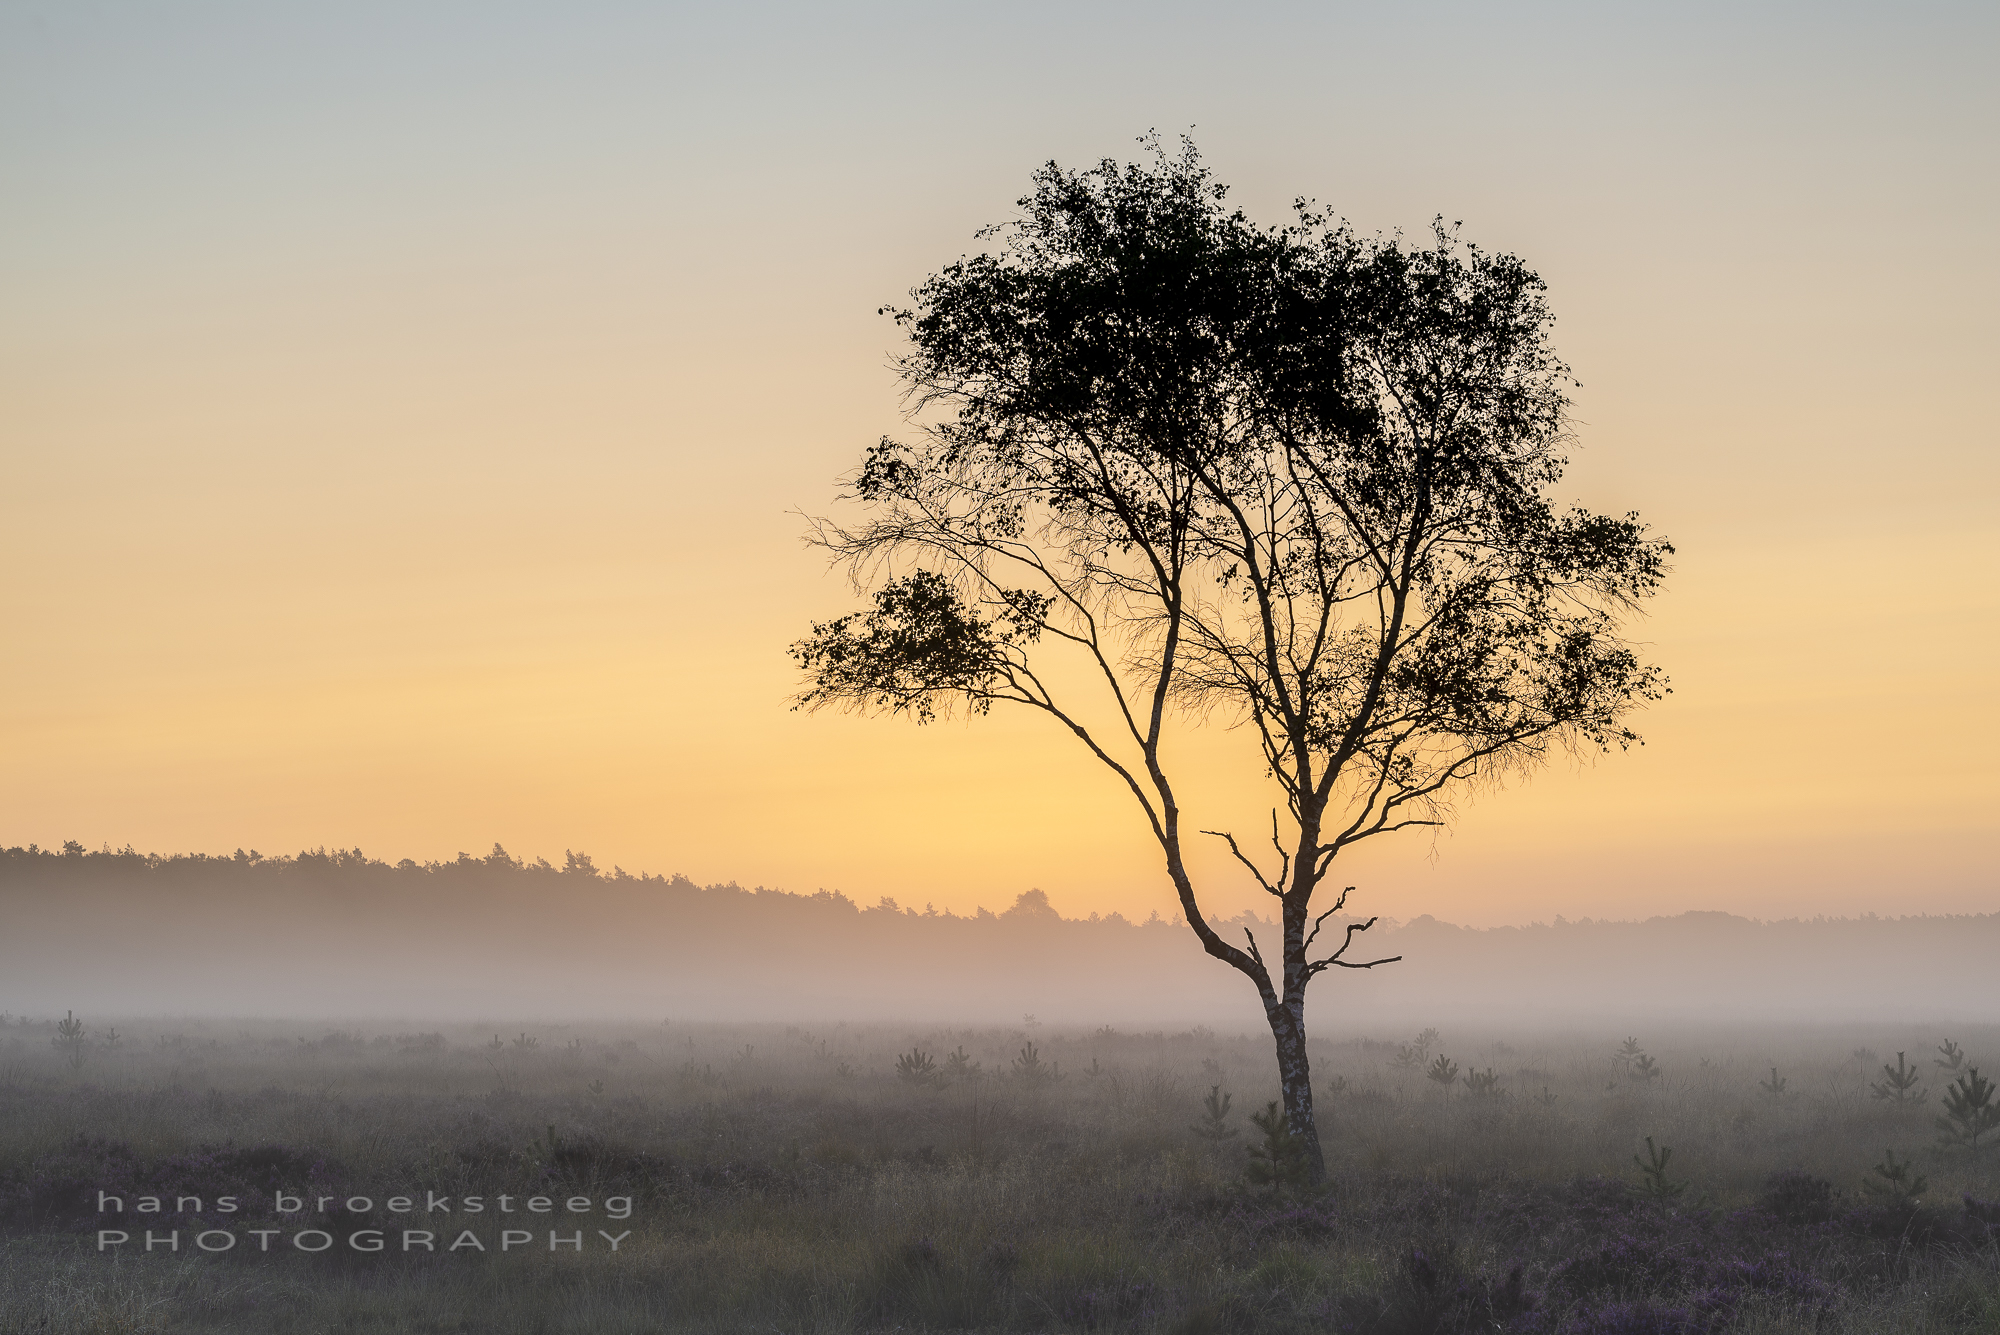 Lone tree in misty landscape